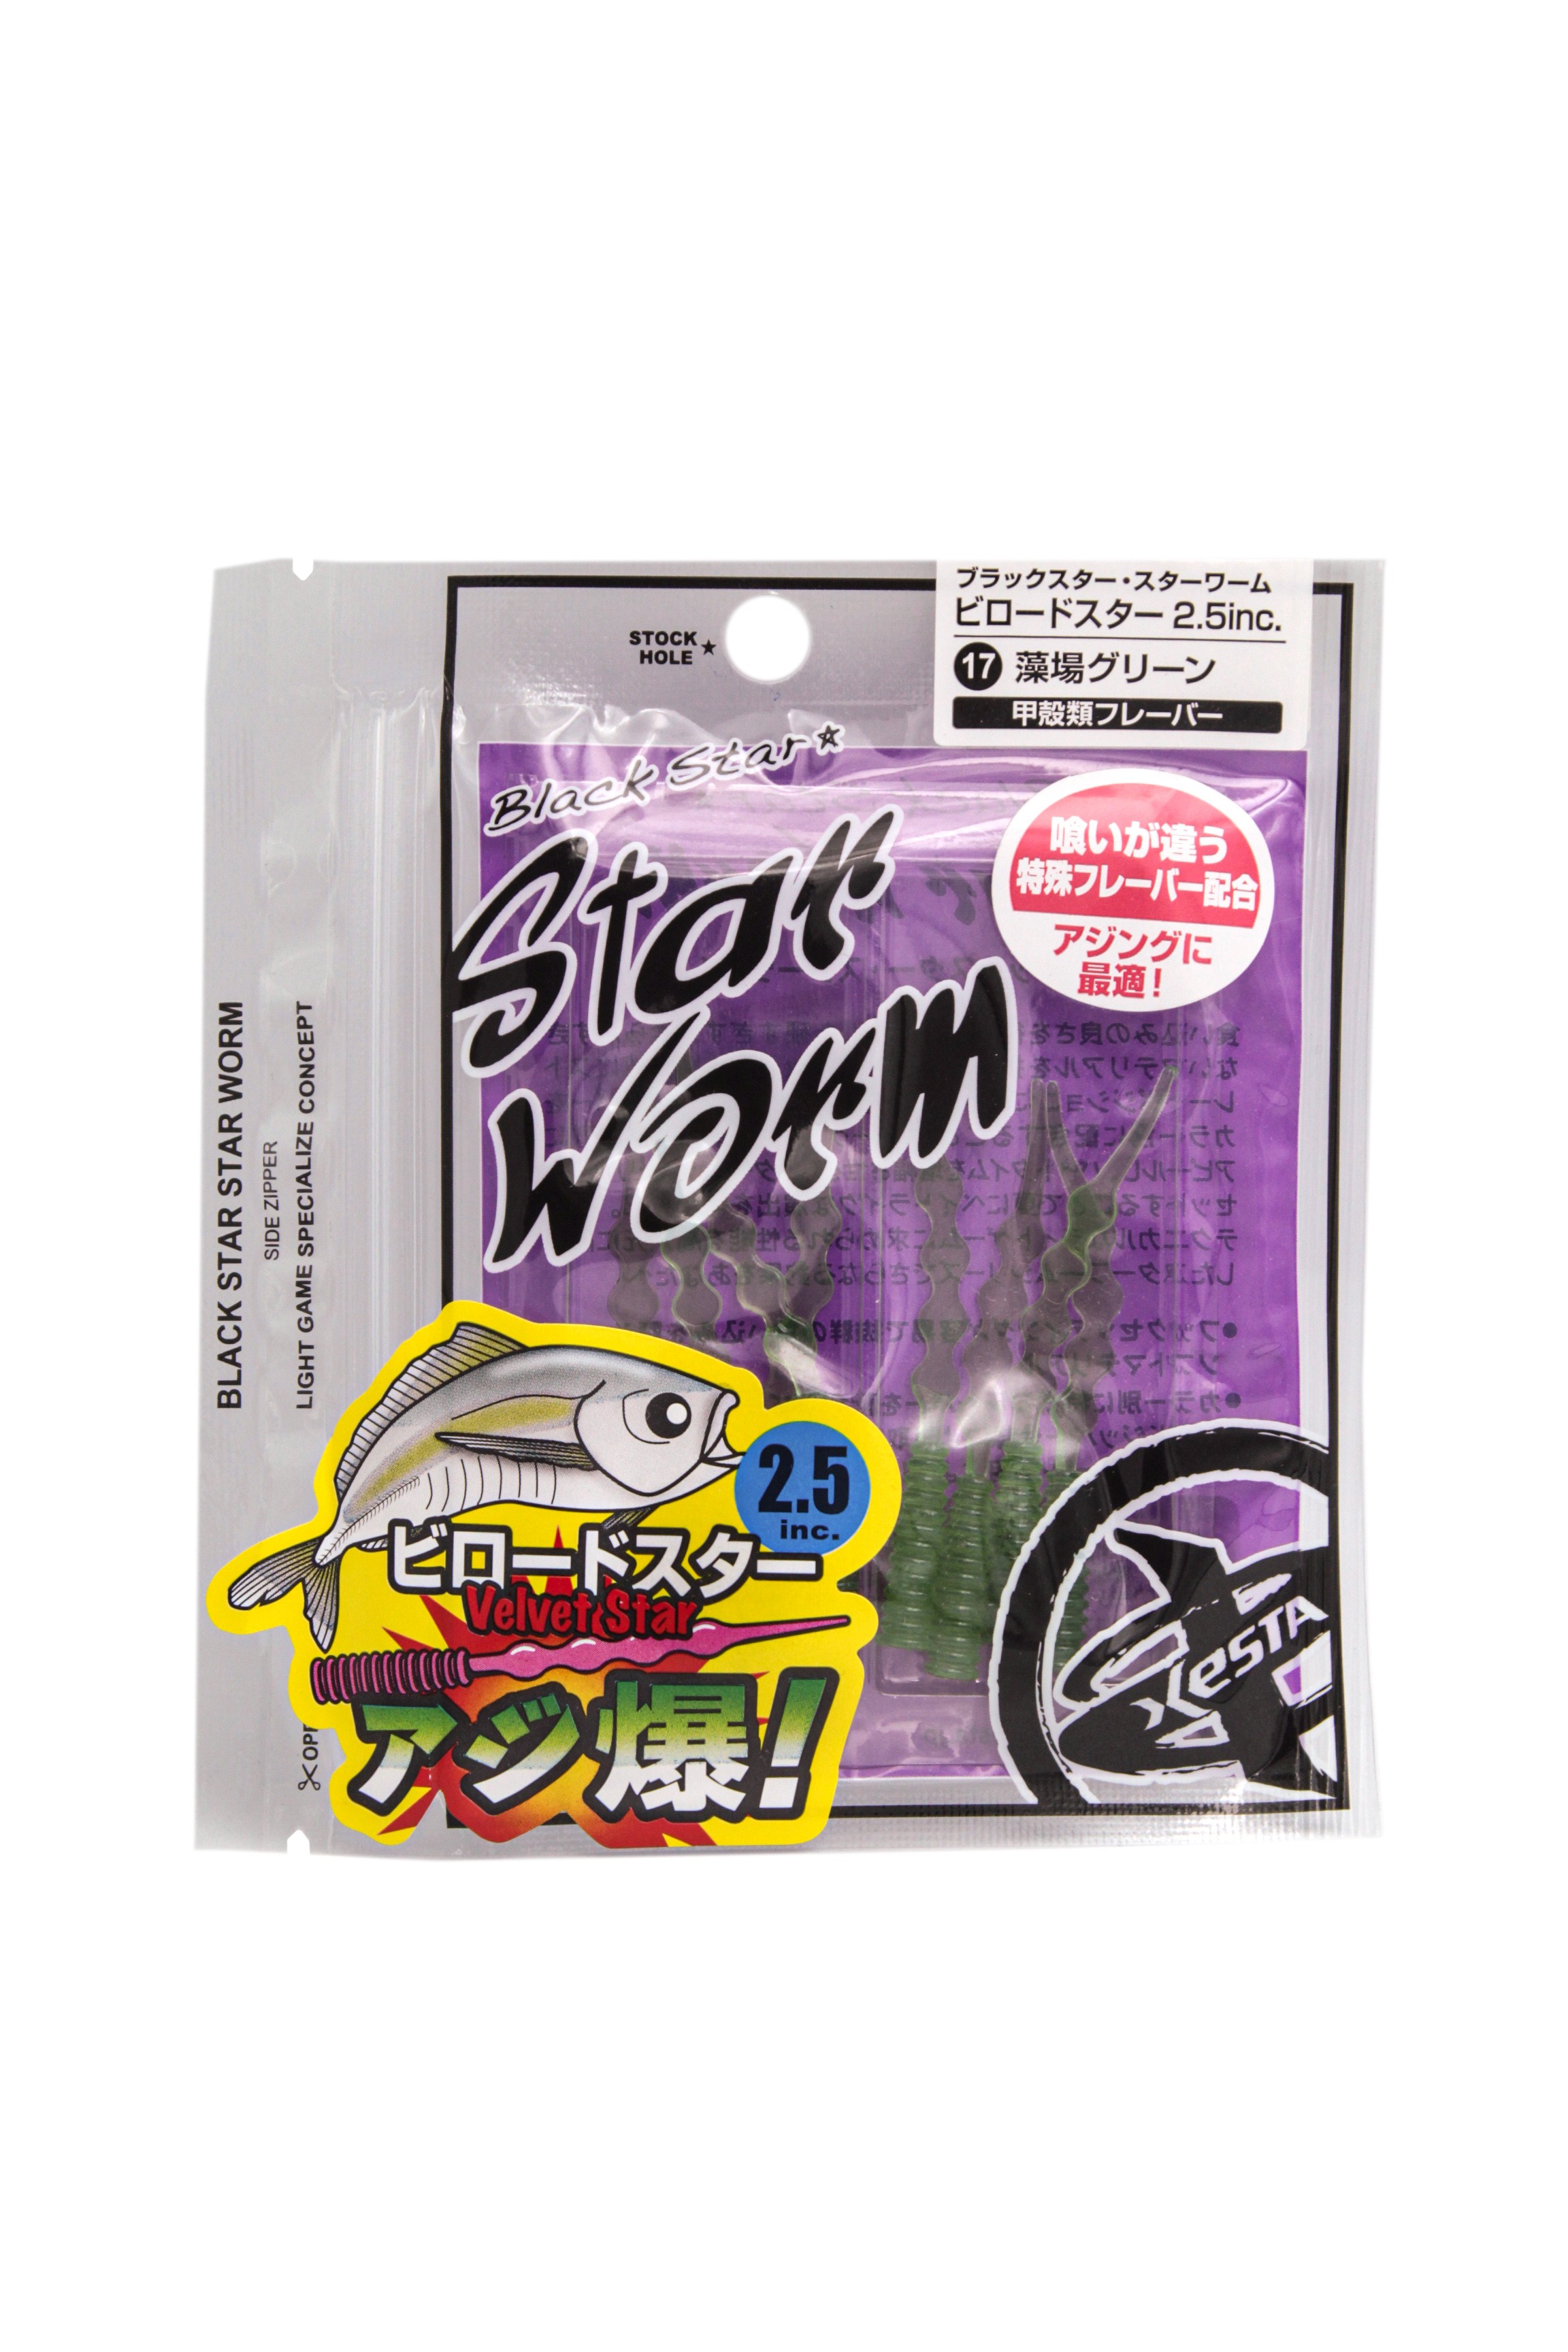 Приманка Xesta Black star worm velvet star 2,5&quot; 17.mg - фото 1